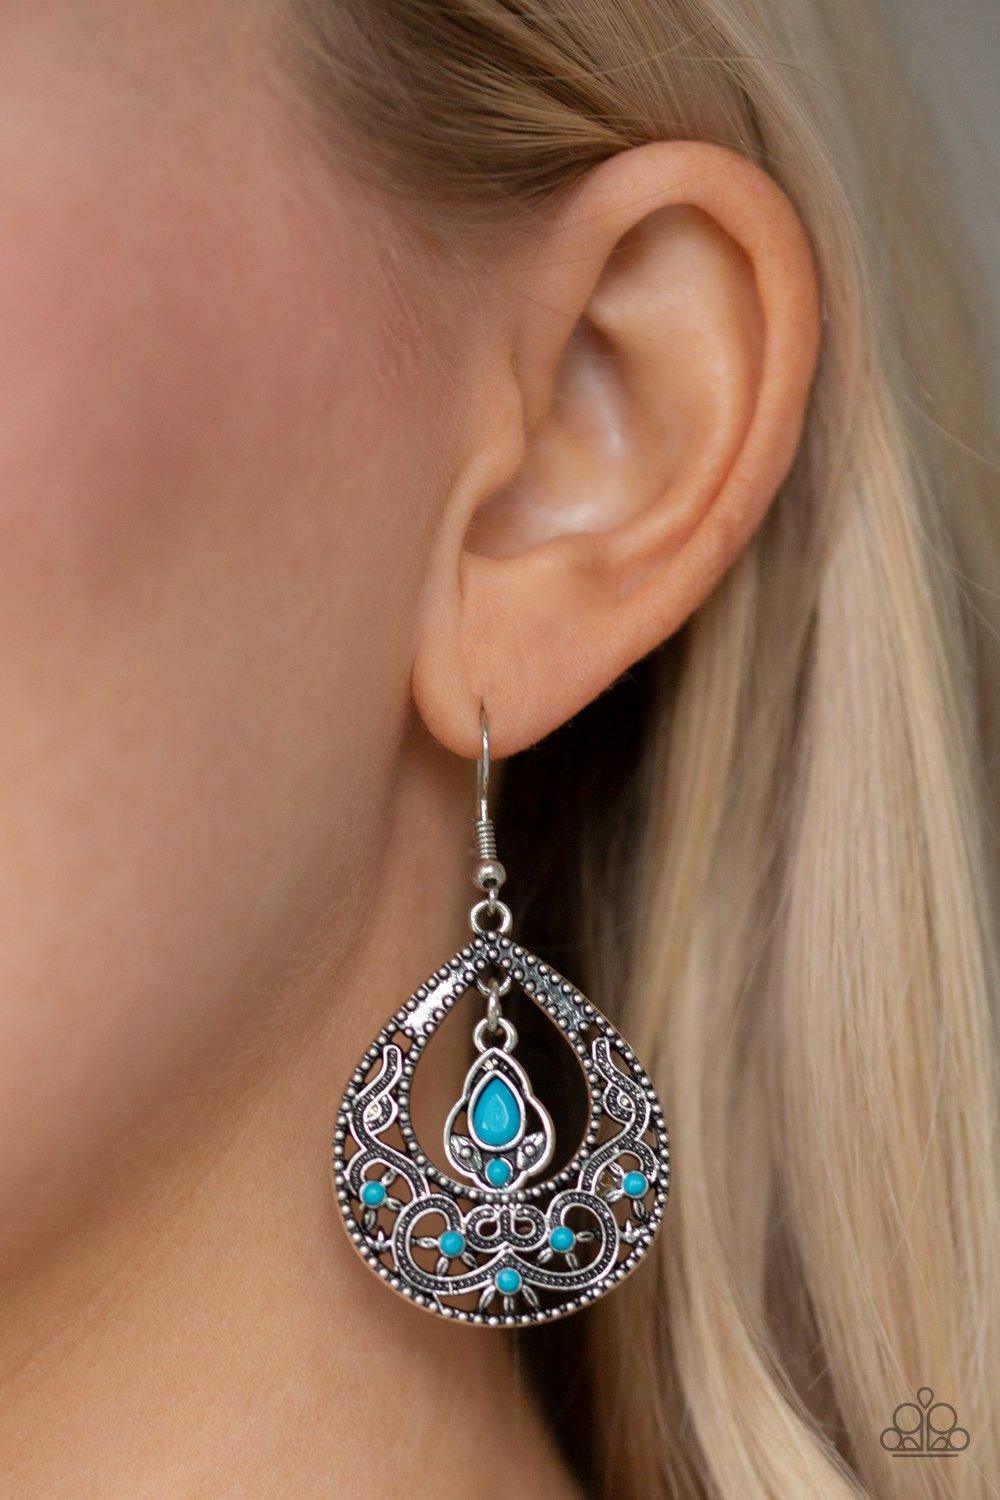 All-Girl Glow Blue Earrings - Jewelry By Bretta